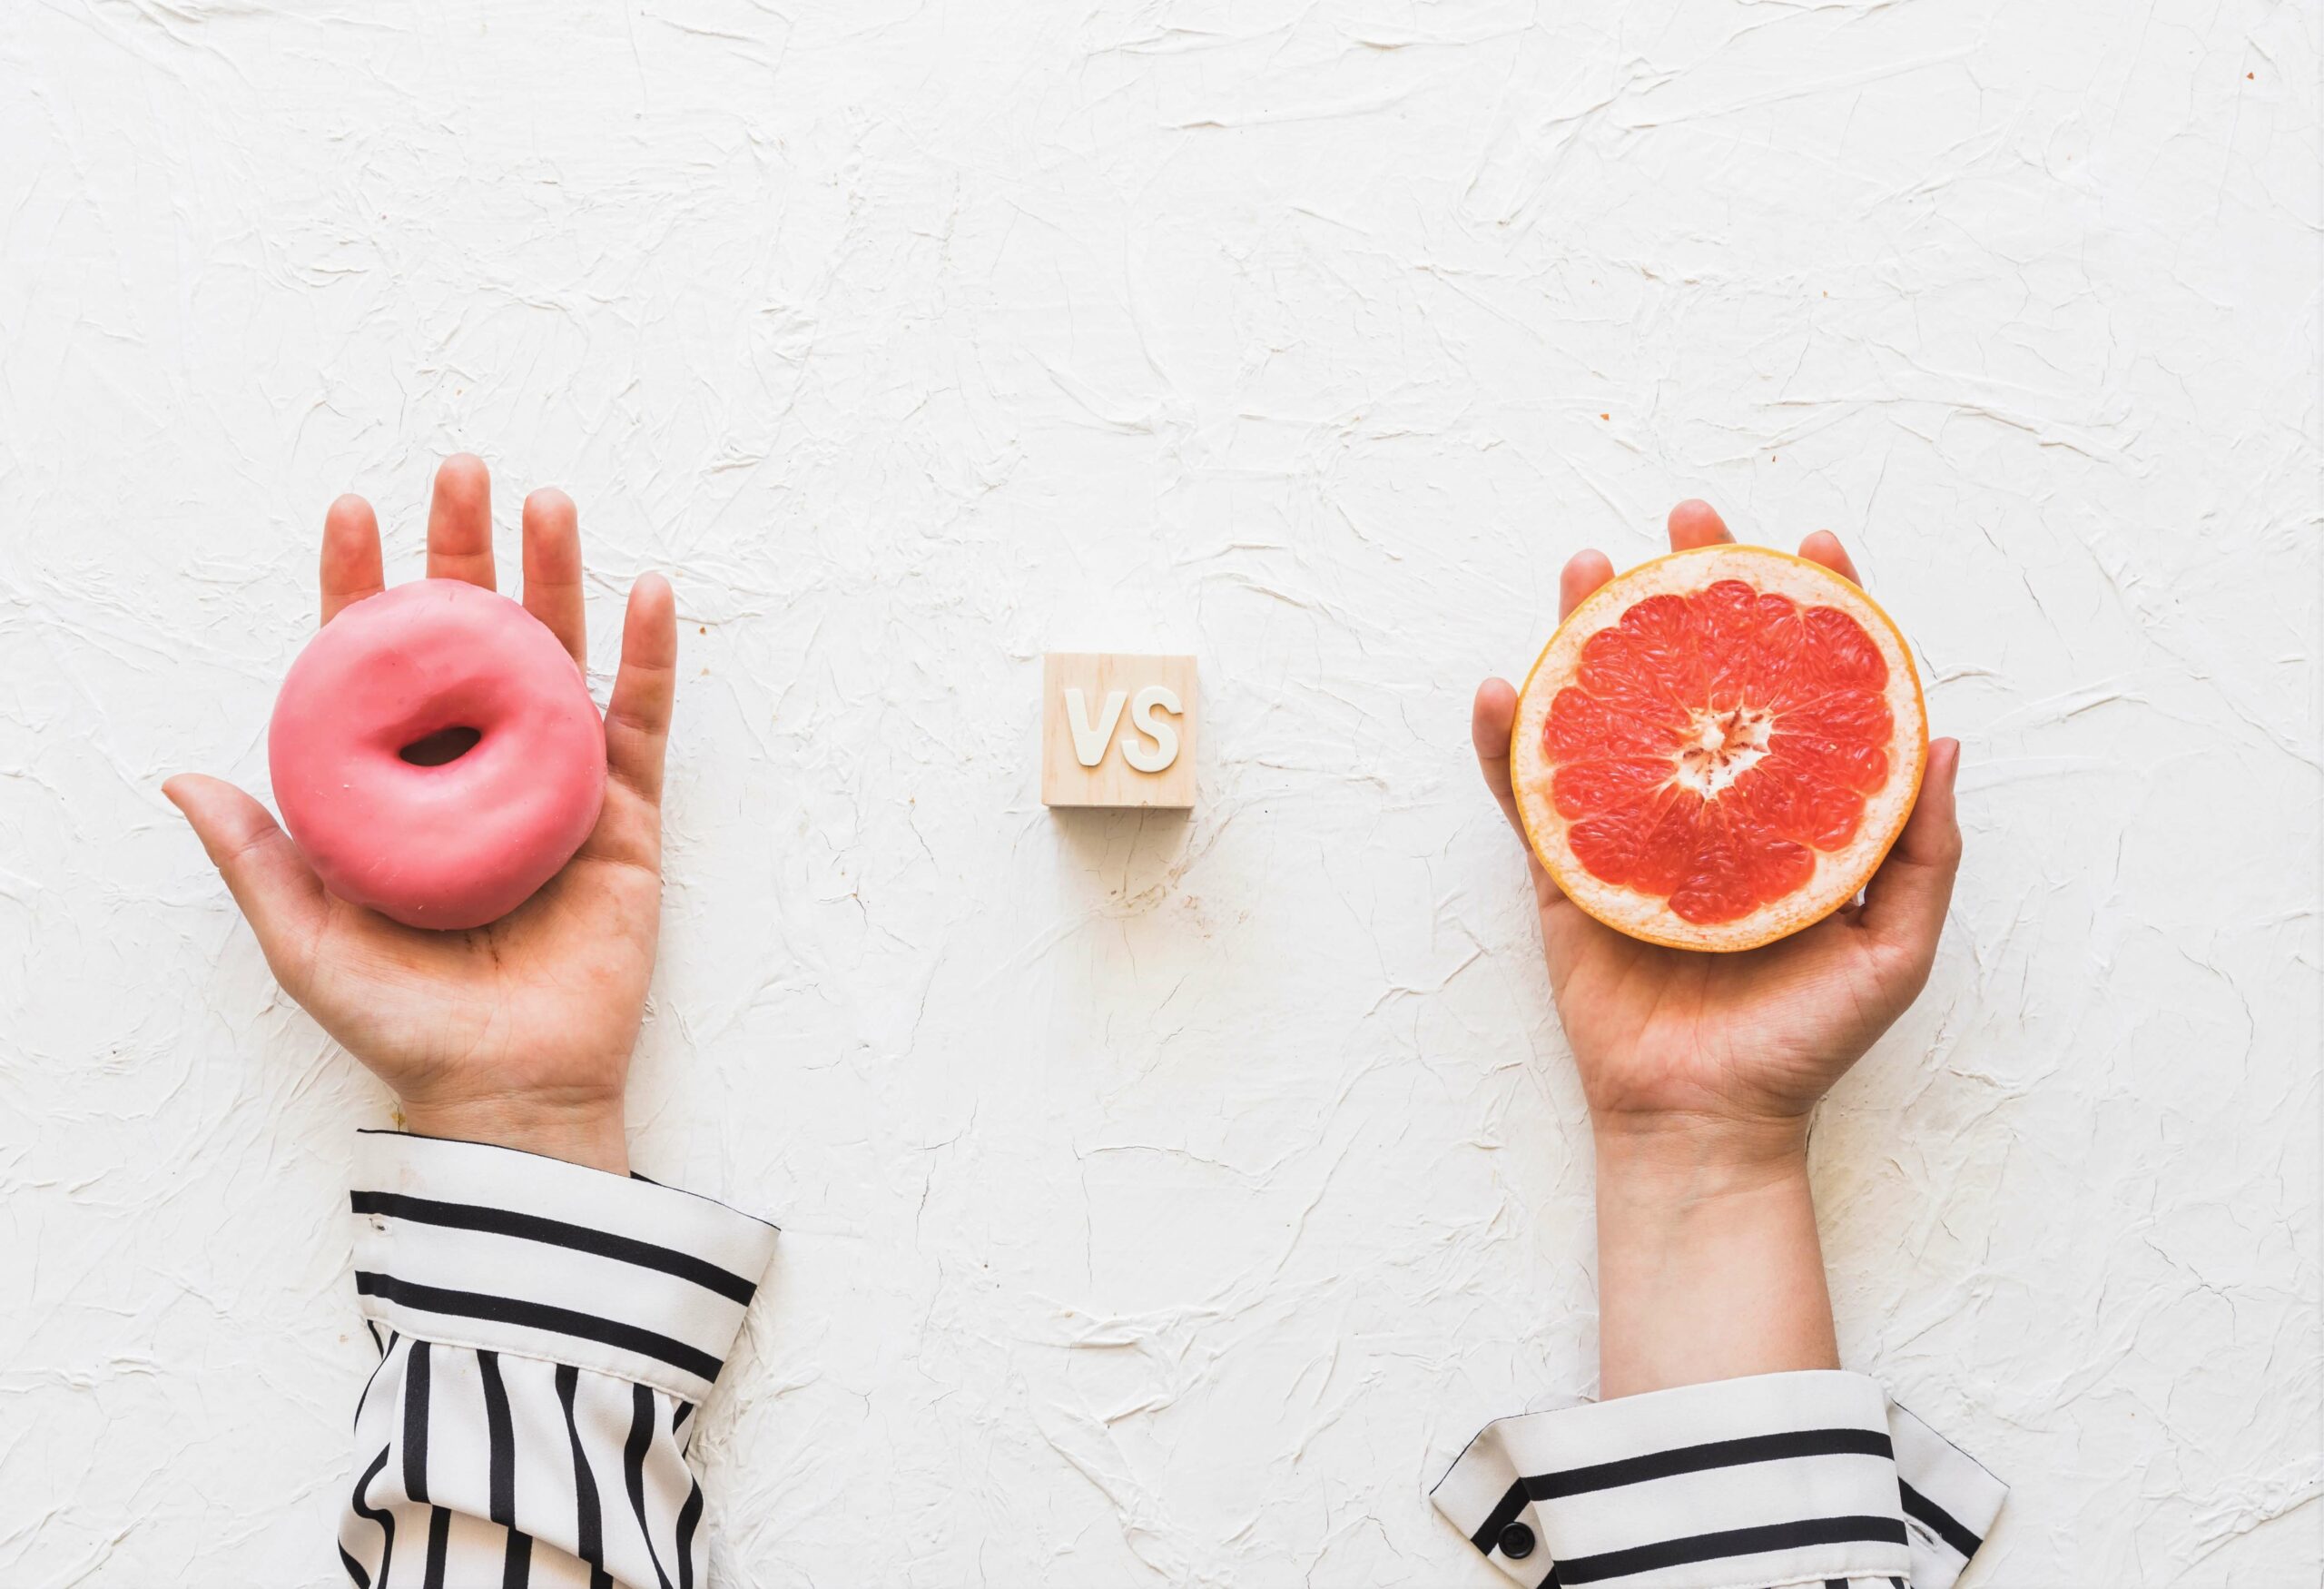 Une main tient un donut, l'autre un pamplemousse, vs entre les deux